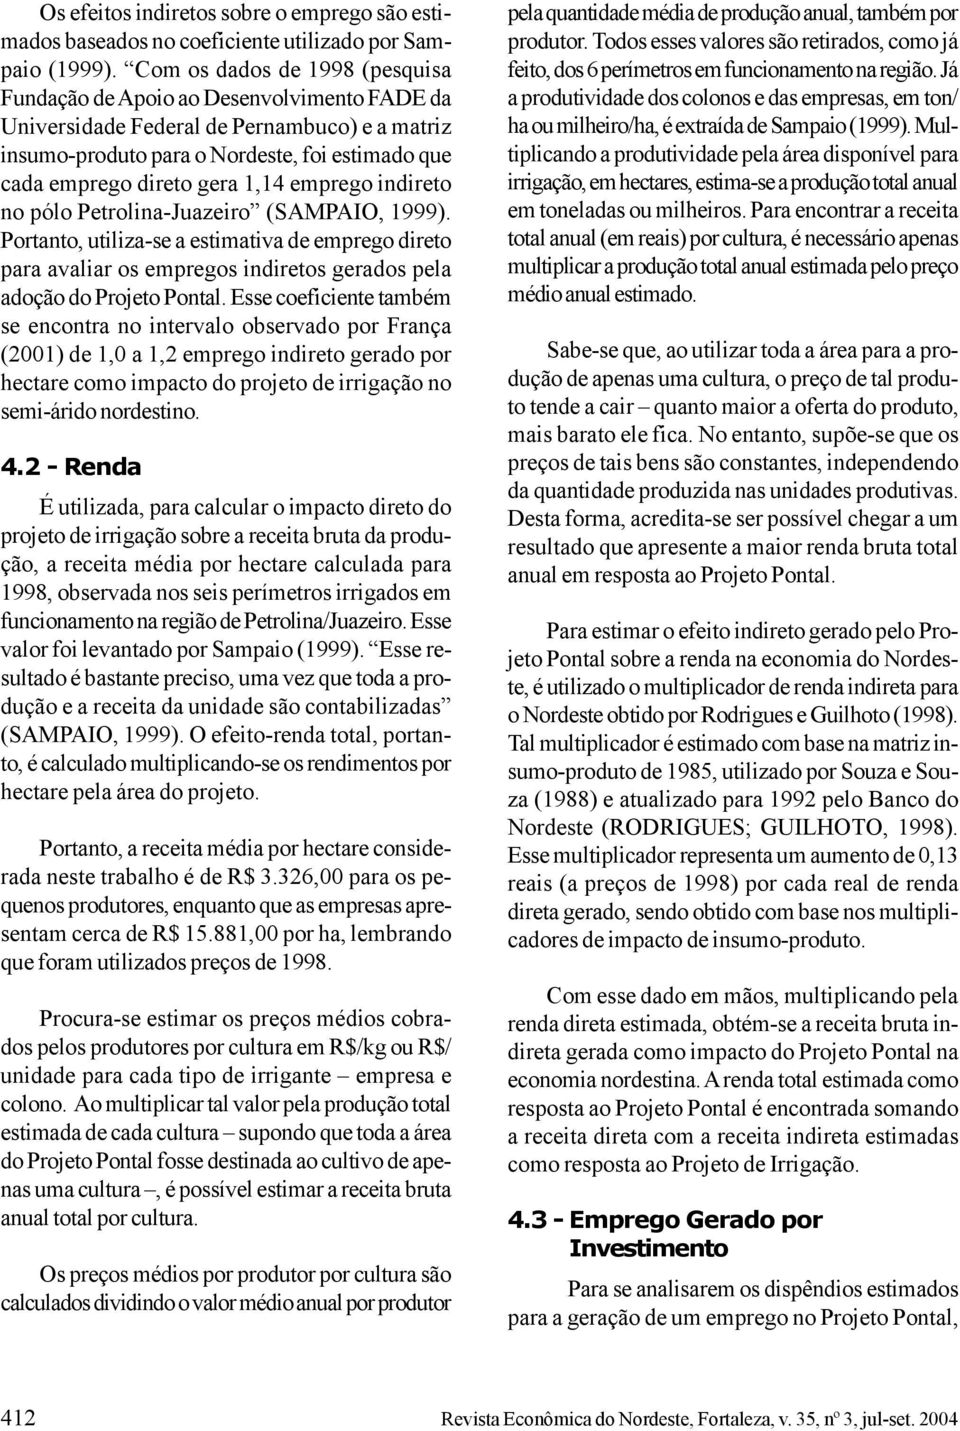 1,14 emprego indireto no pólo Petrolina-Juazeiro (SAMPAIO, 1999). Portanto, utiliza-se a estimativa de emprego direto para avaliar os empregos indiretos gerados pela adoção do Projeto Pontal.